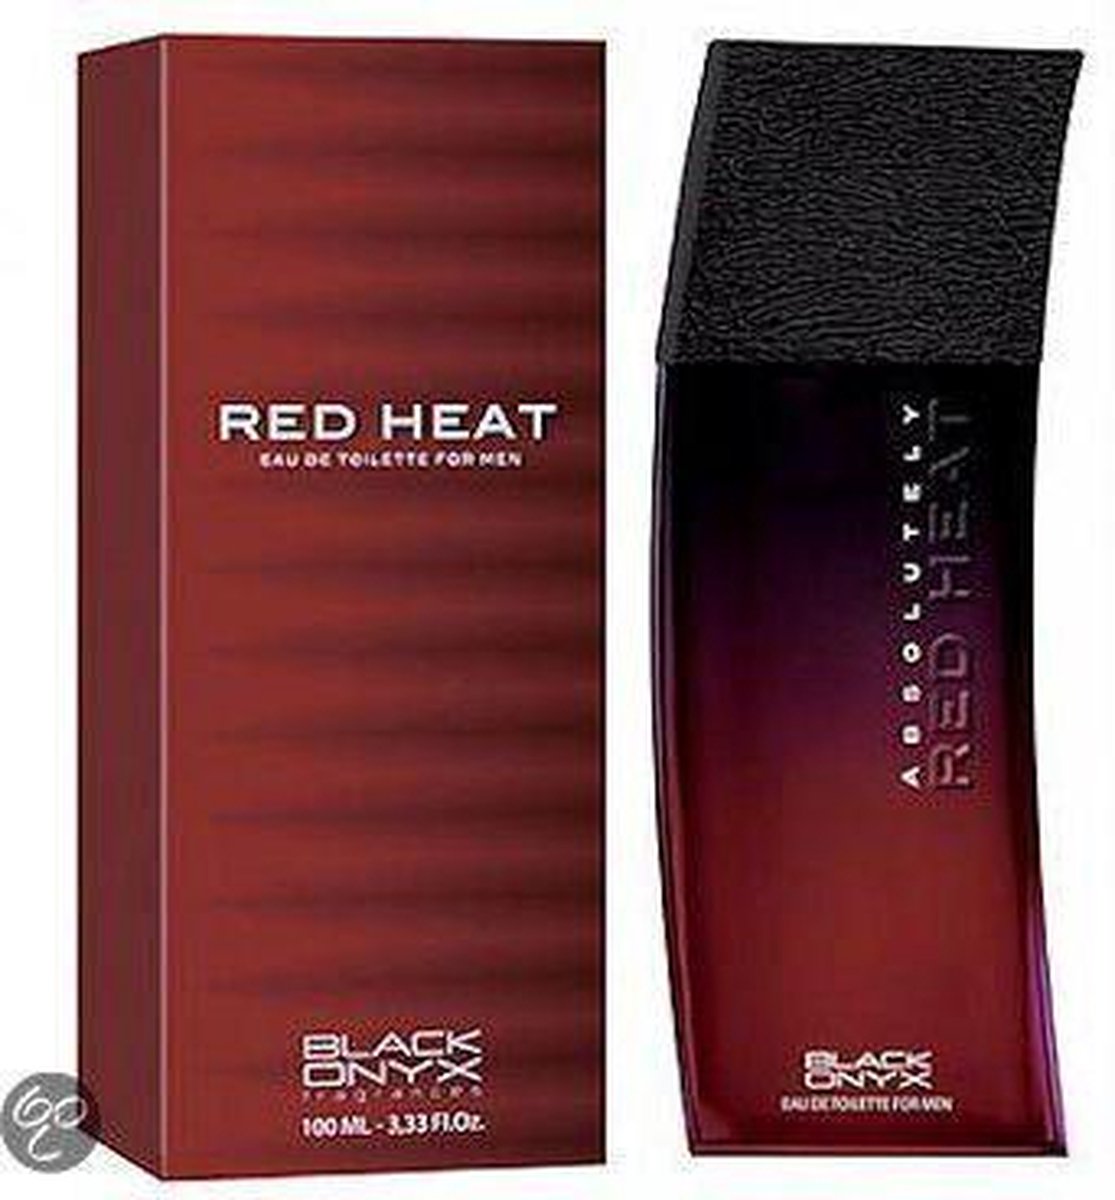 Black Onyx Eau de parfum Red Heat | bol.com